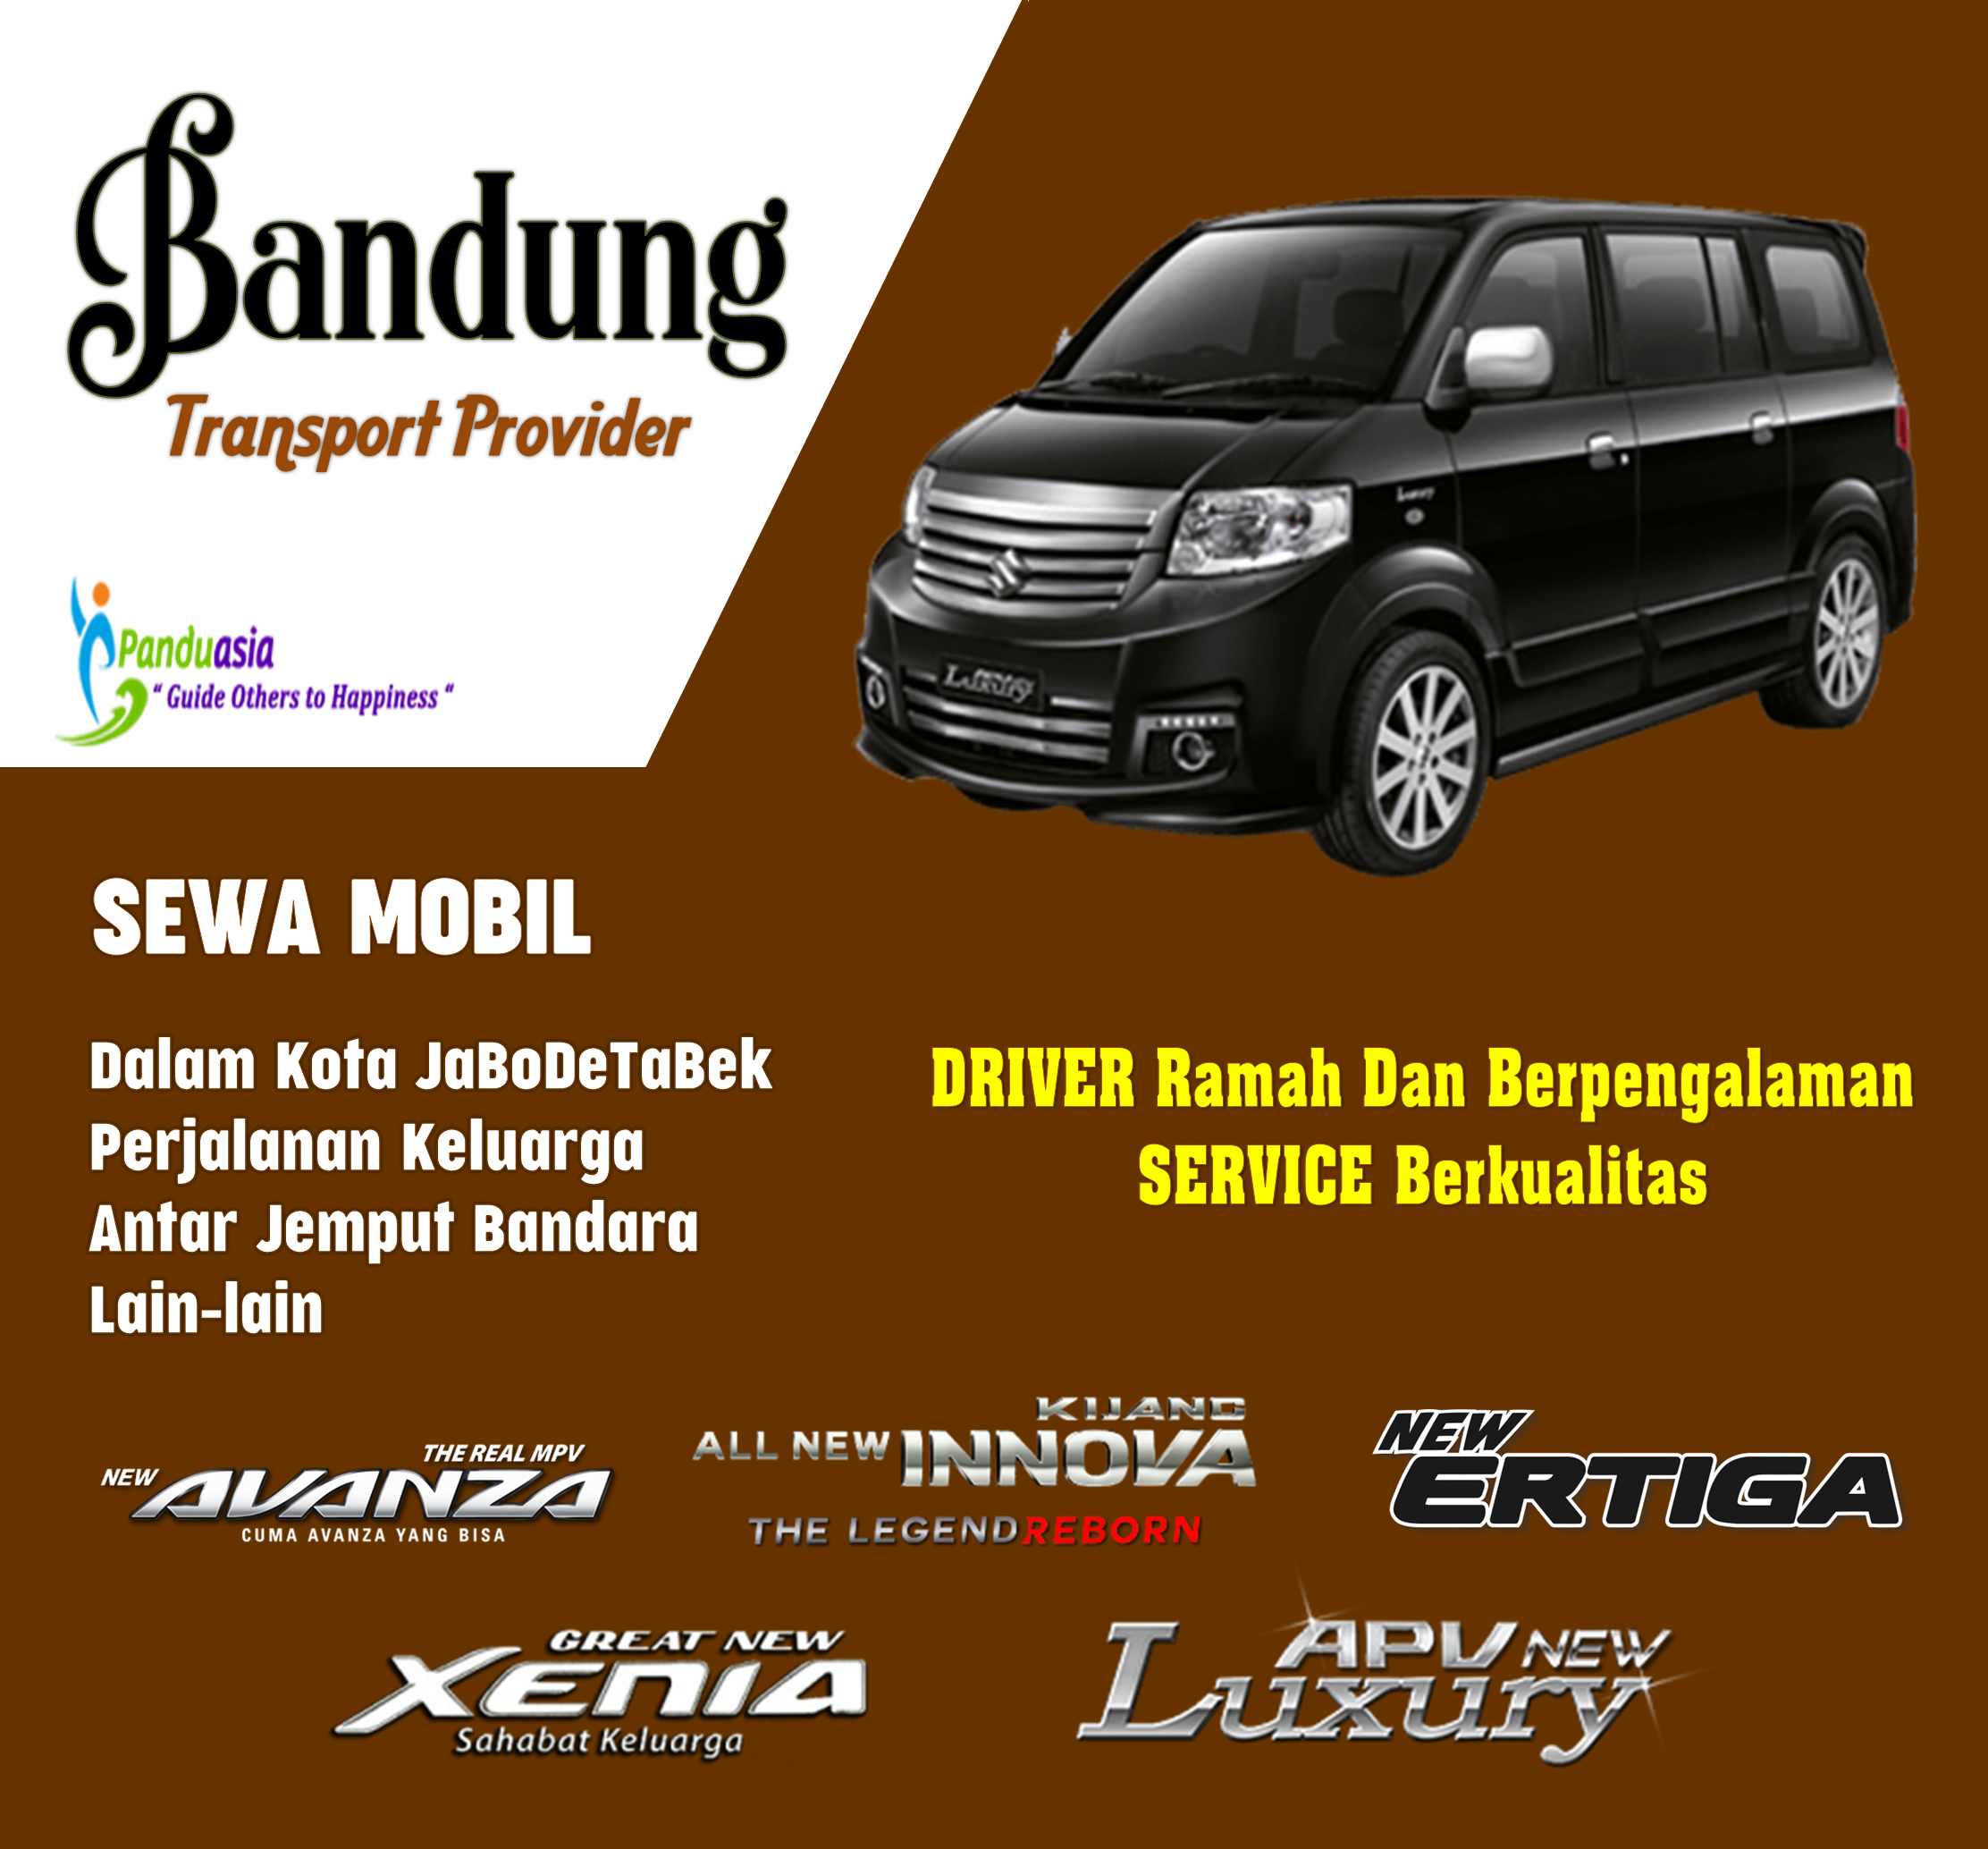 SEWA MOBIL BANDUNG (Bandung Car & Driver Provider)